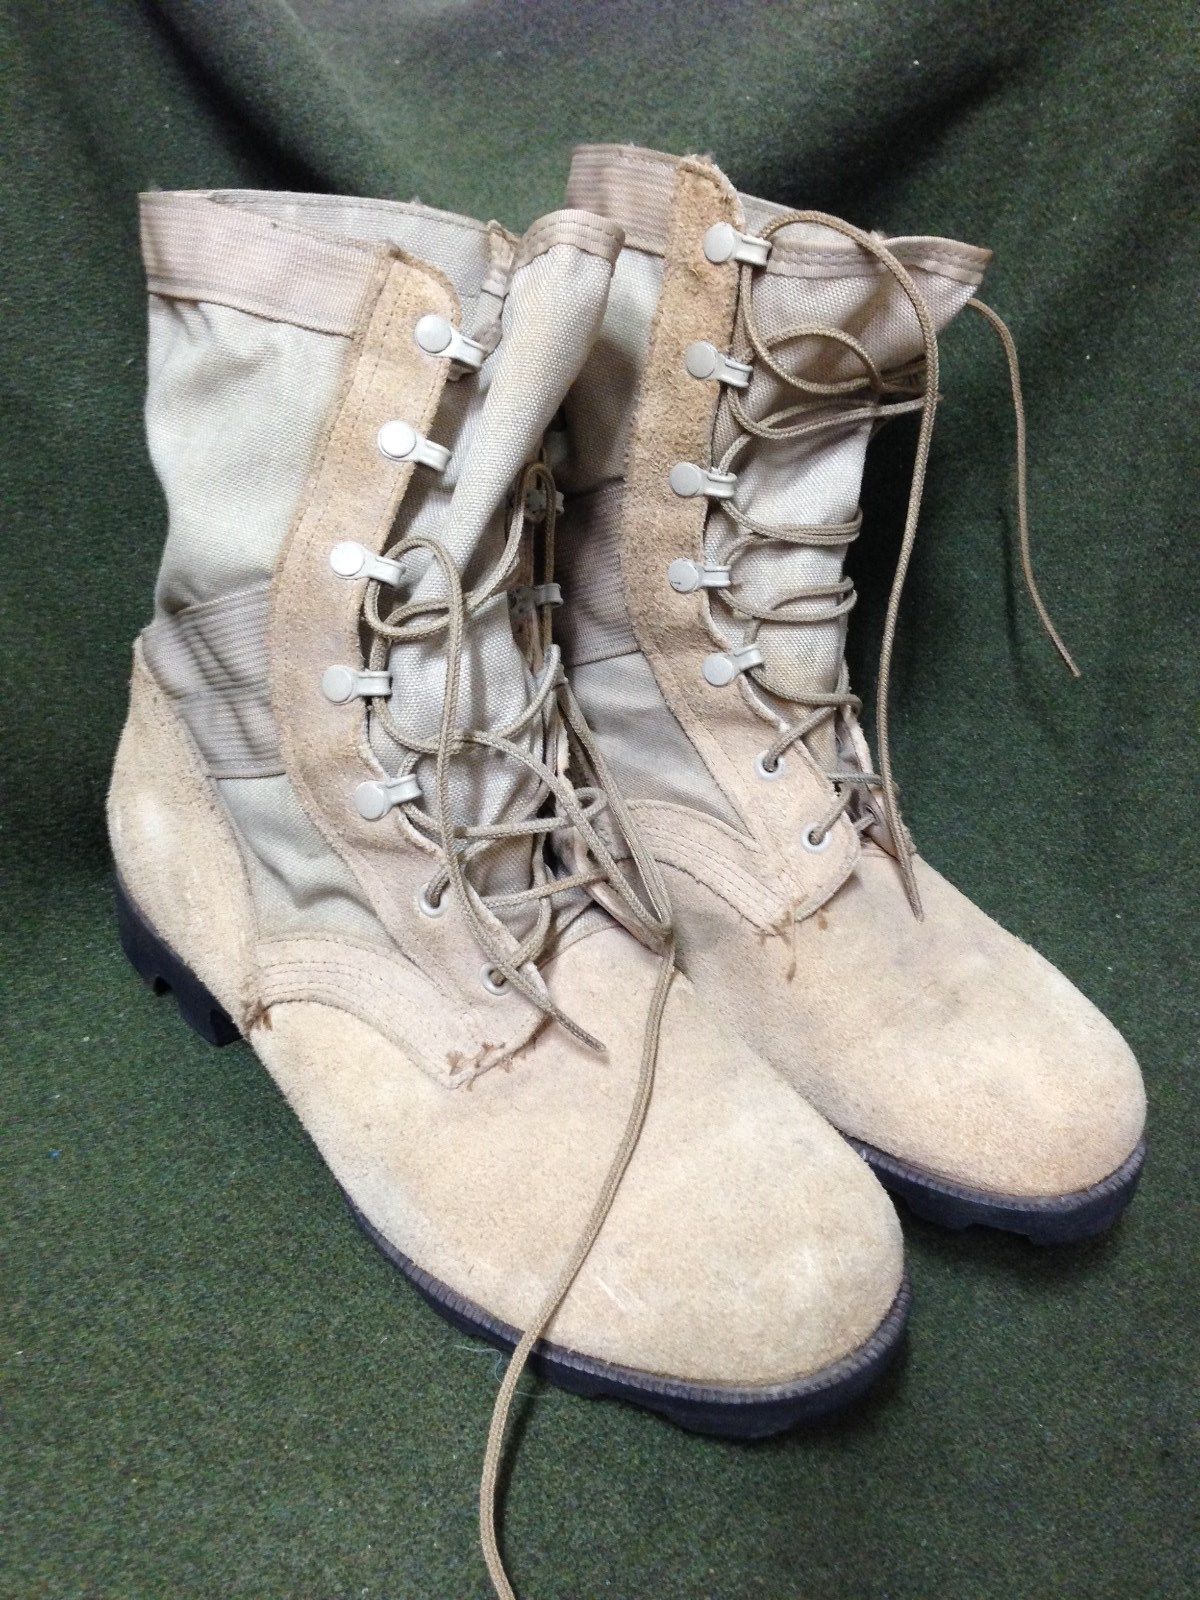 American Desert Combat Boot (1990s) | Equipment Wiki | Fandom